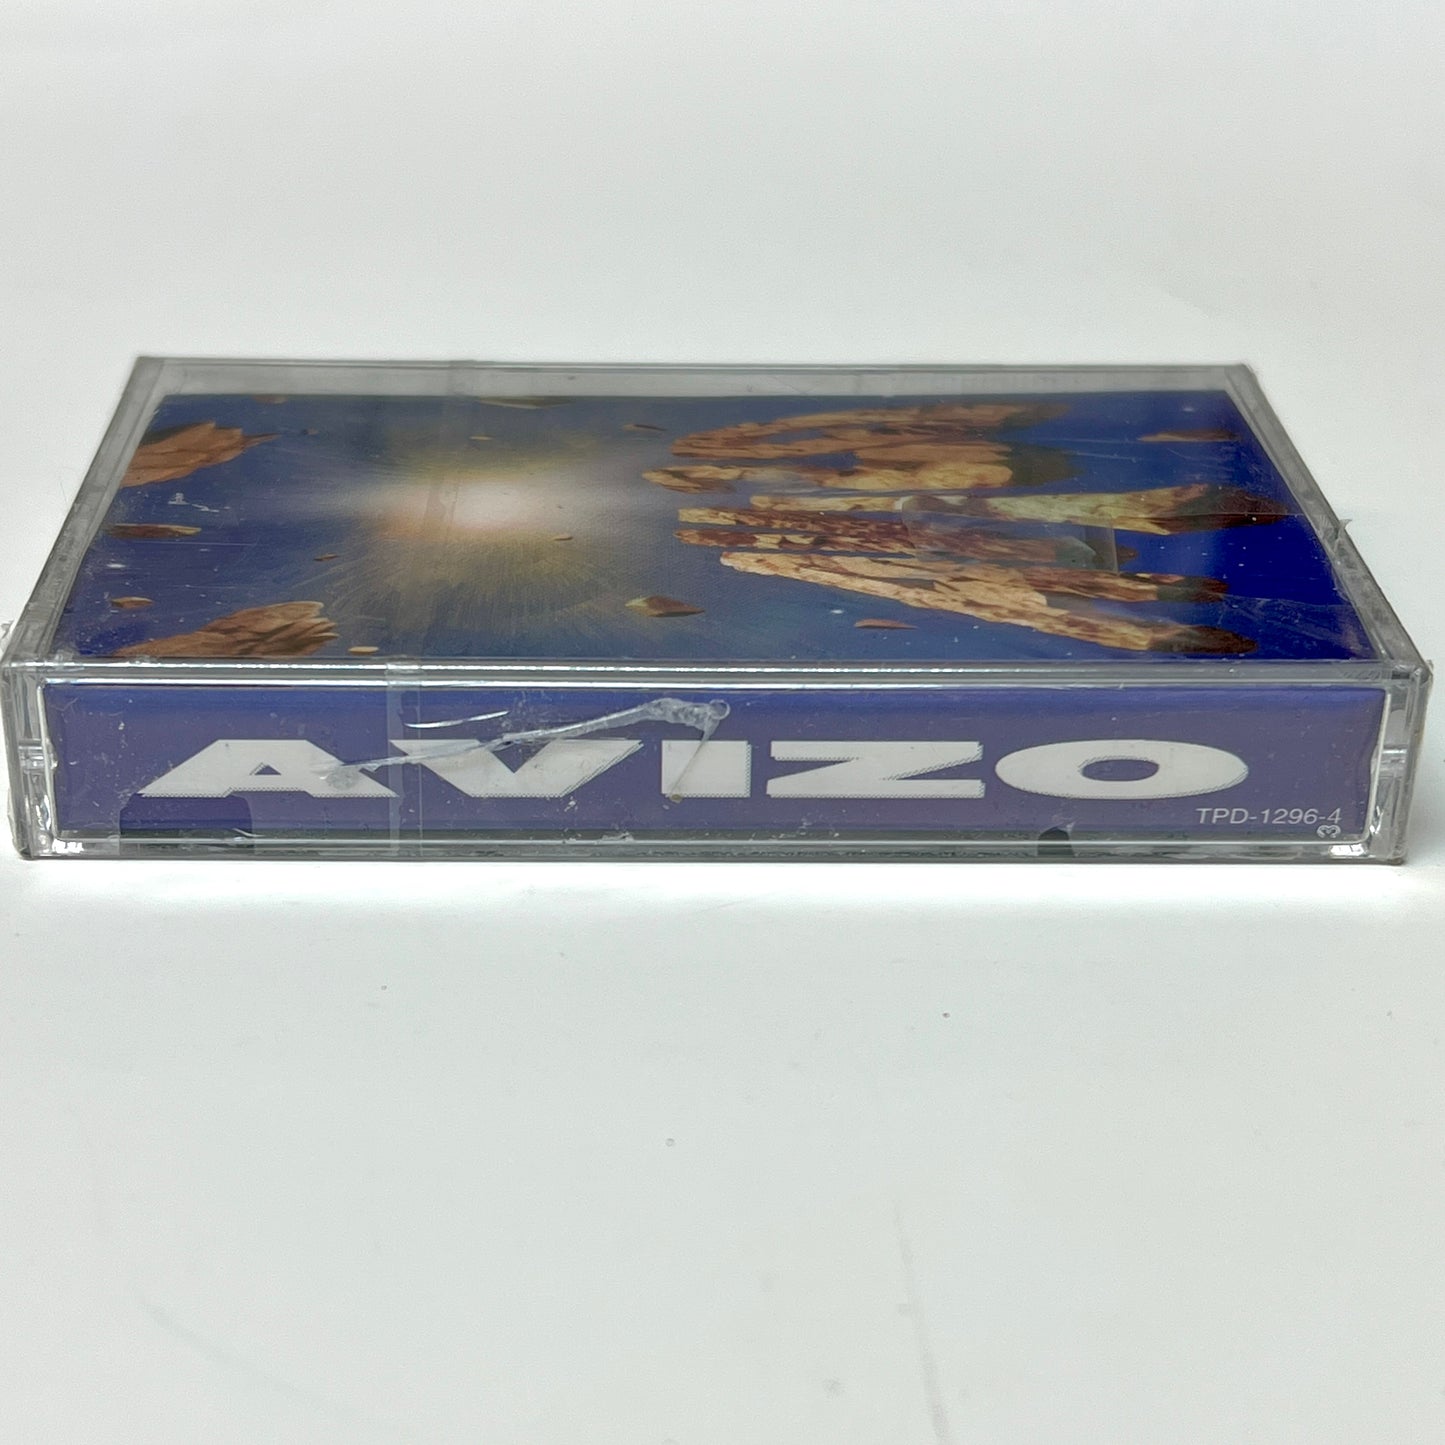 Avizo - Avizo (Cassette)